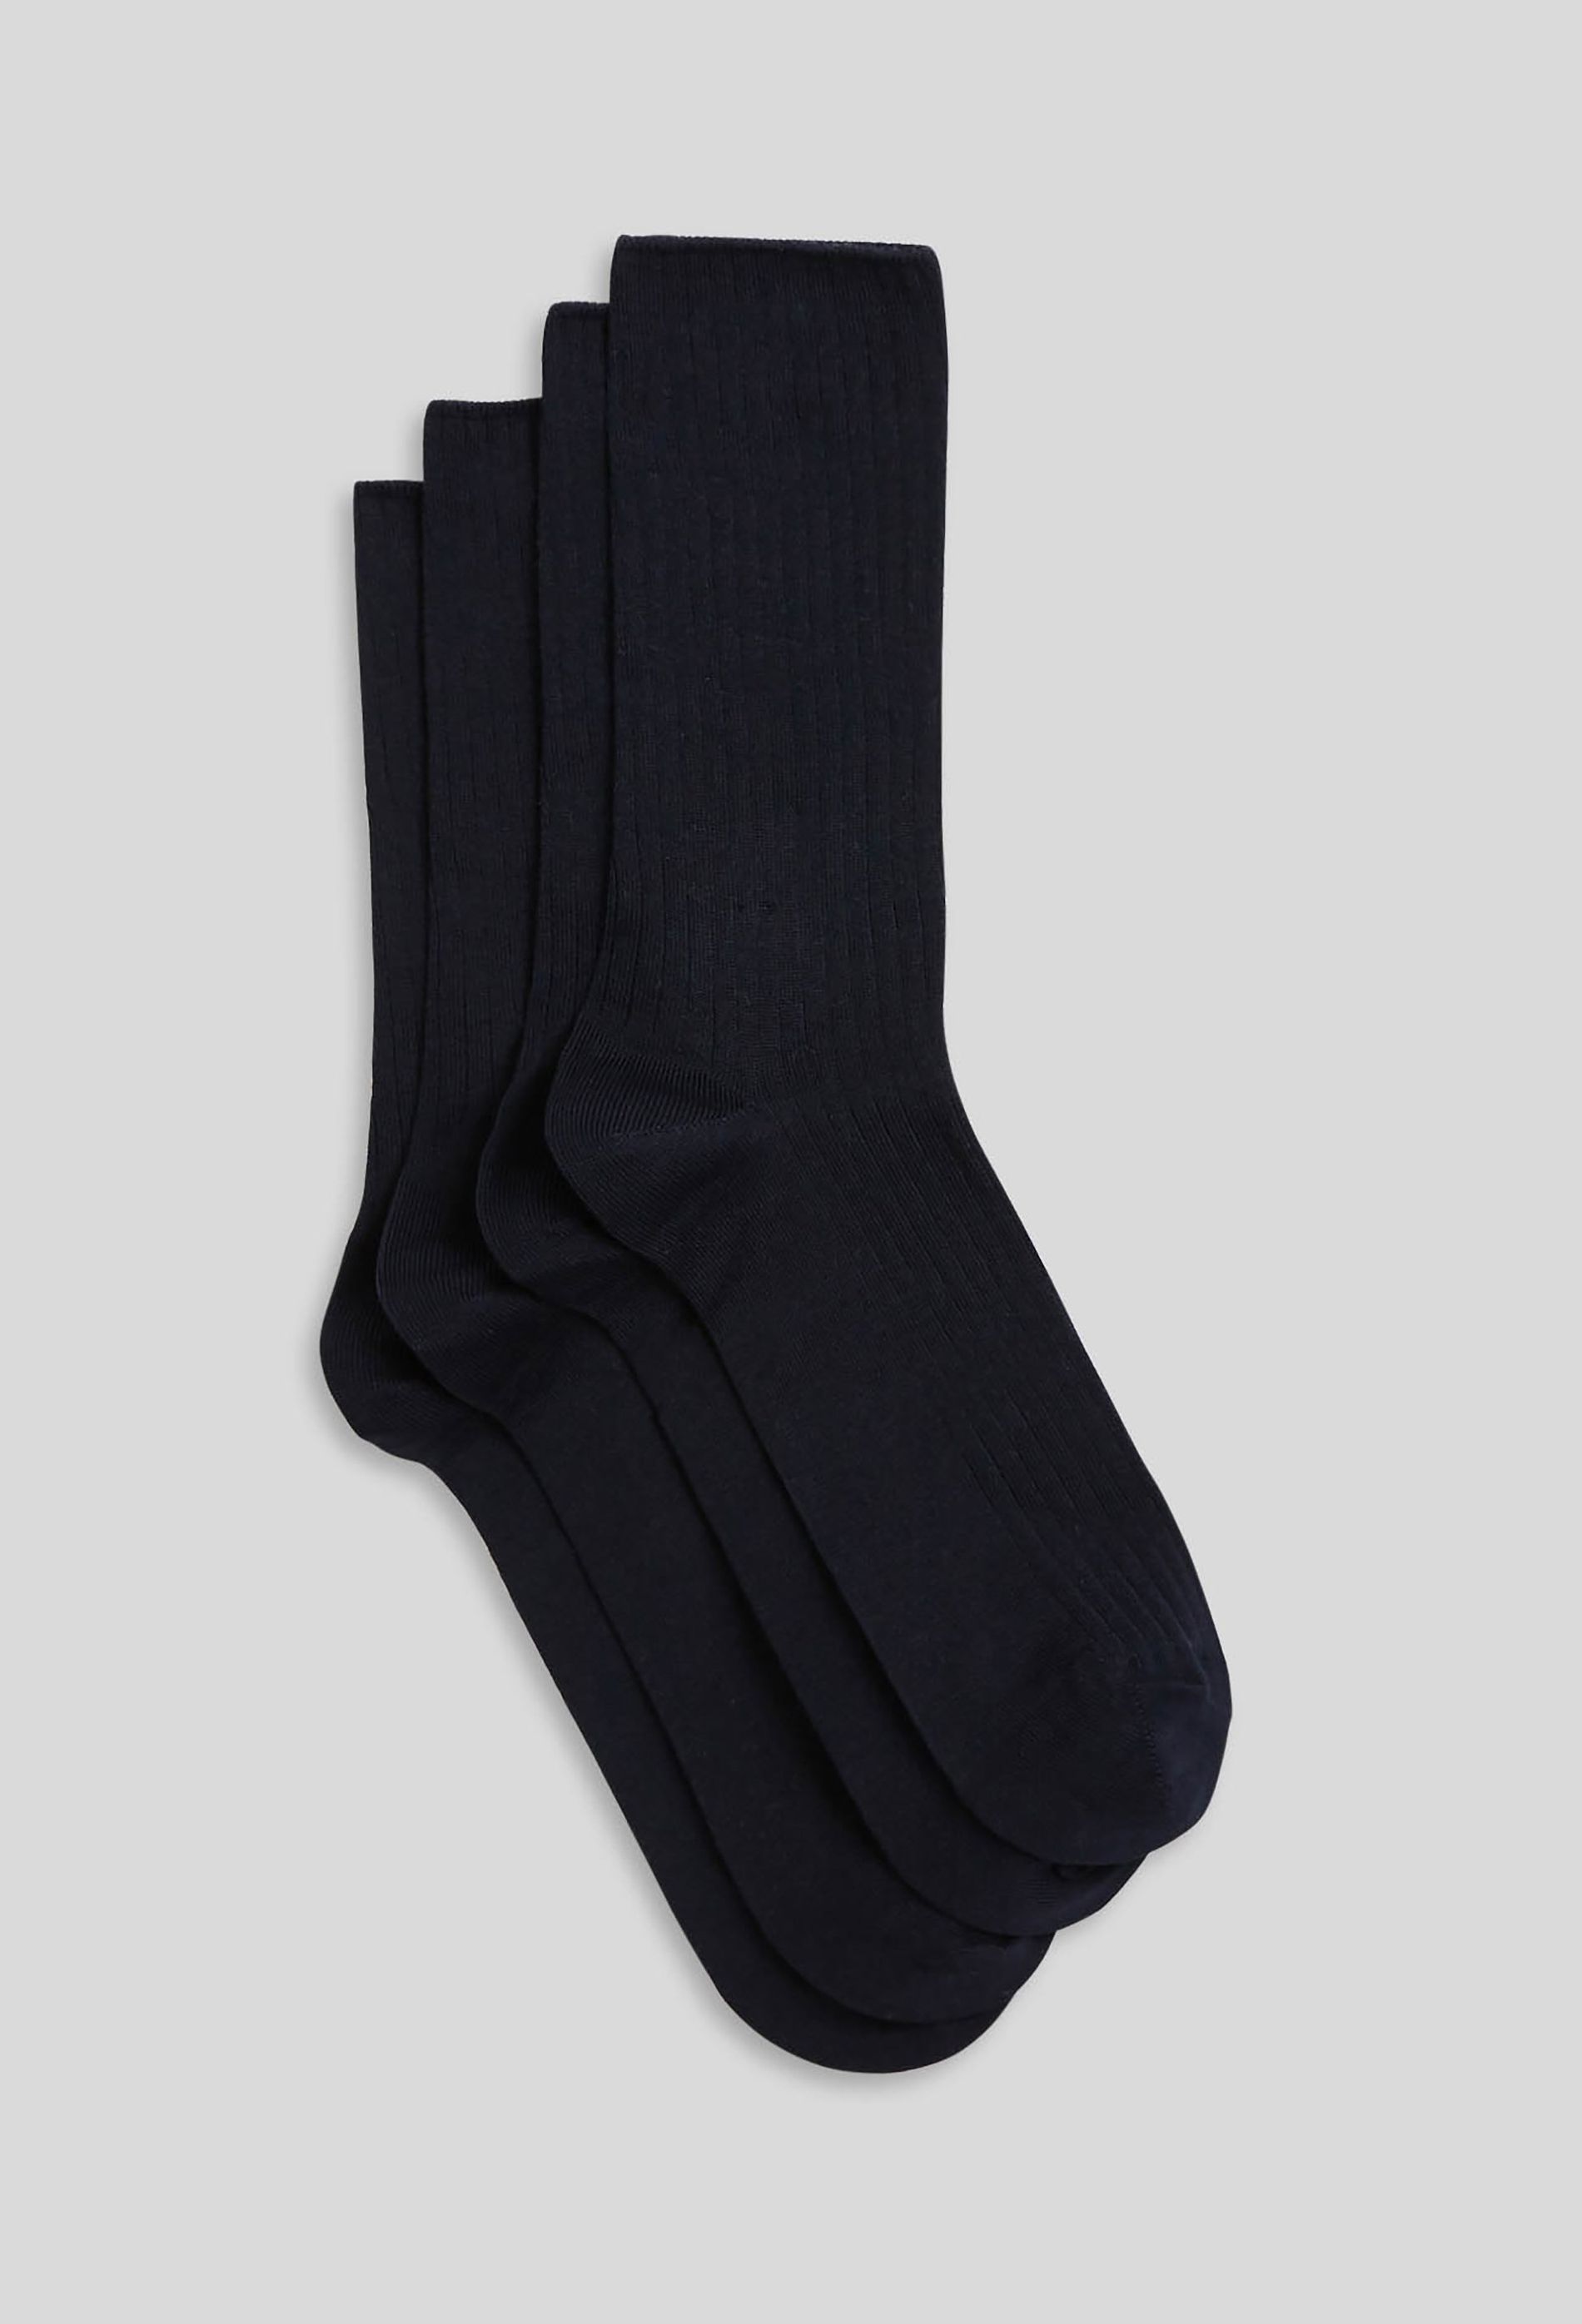 Lot de 4 paires de Chaussettes courtes Bleuforêt 98% coton Noir taille 43/46  neufs dans emballage - Bleuforêt